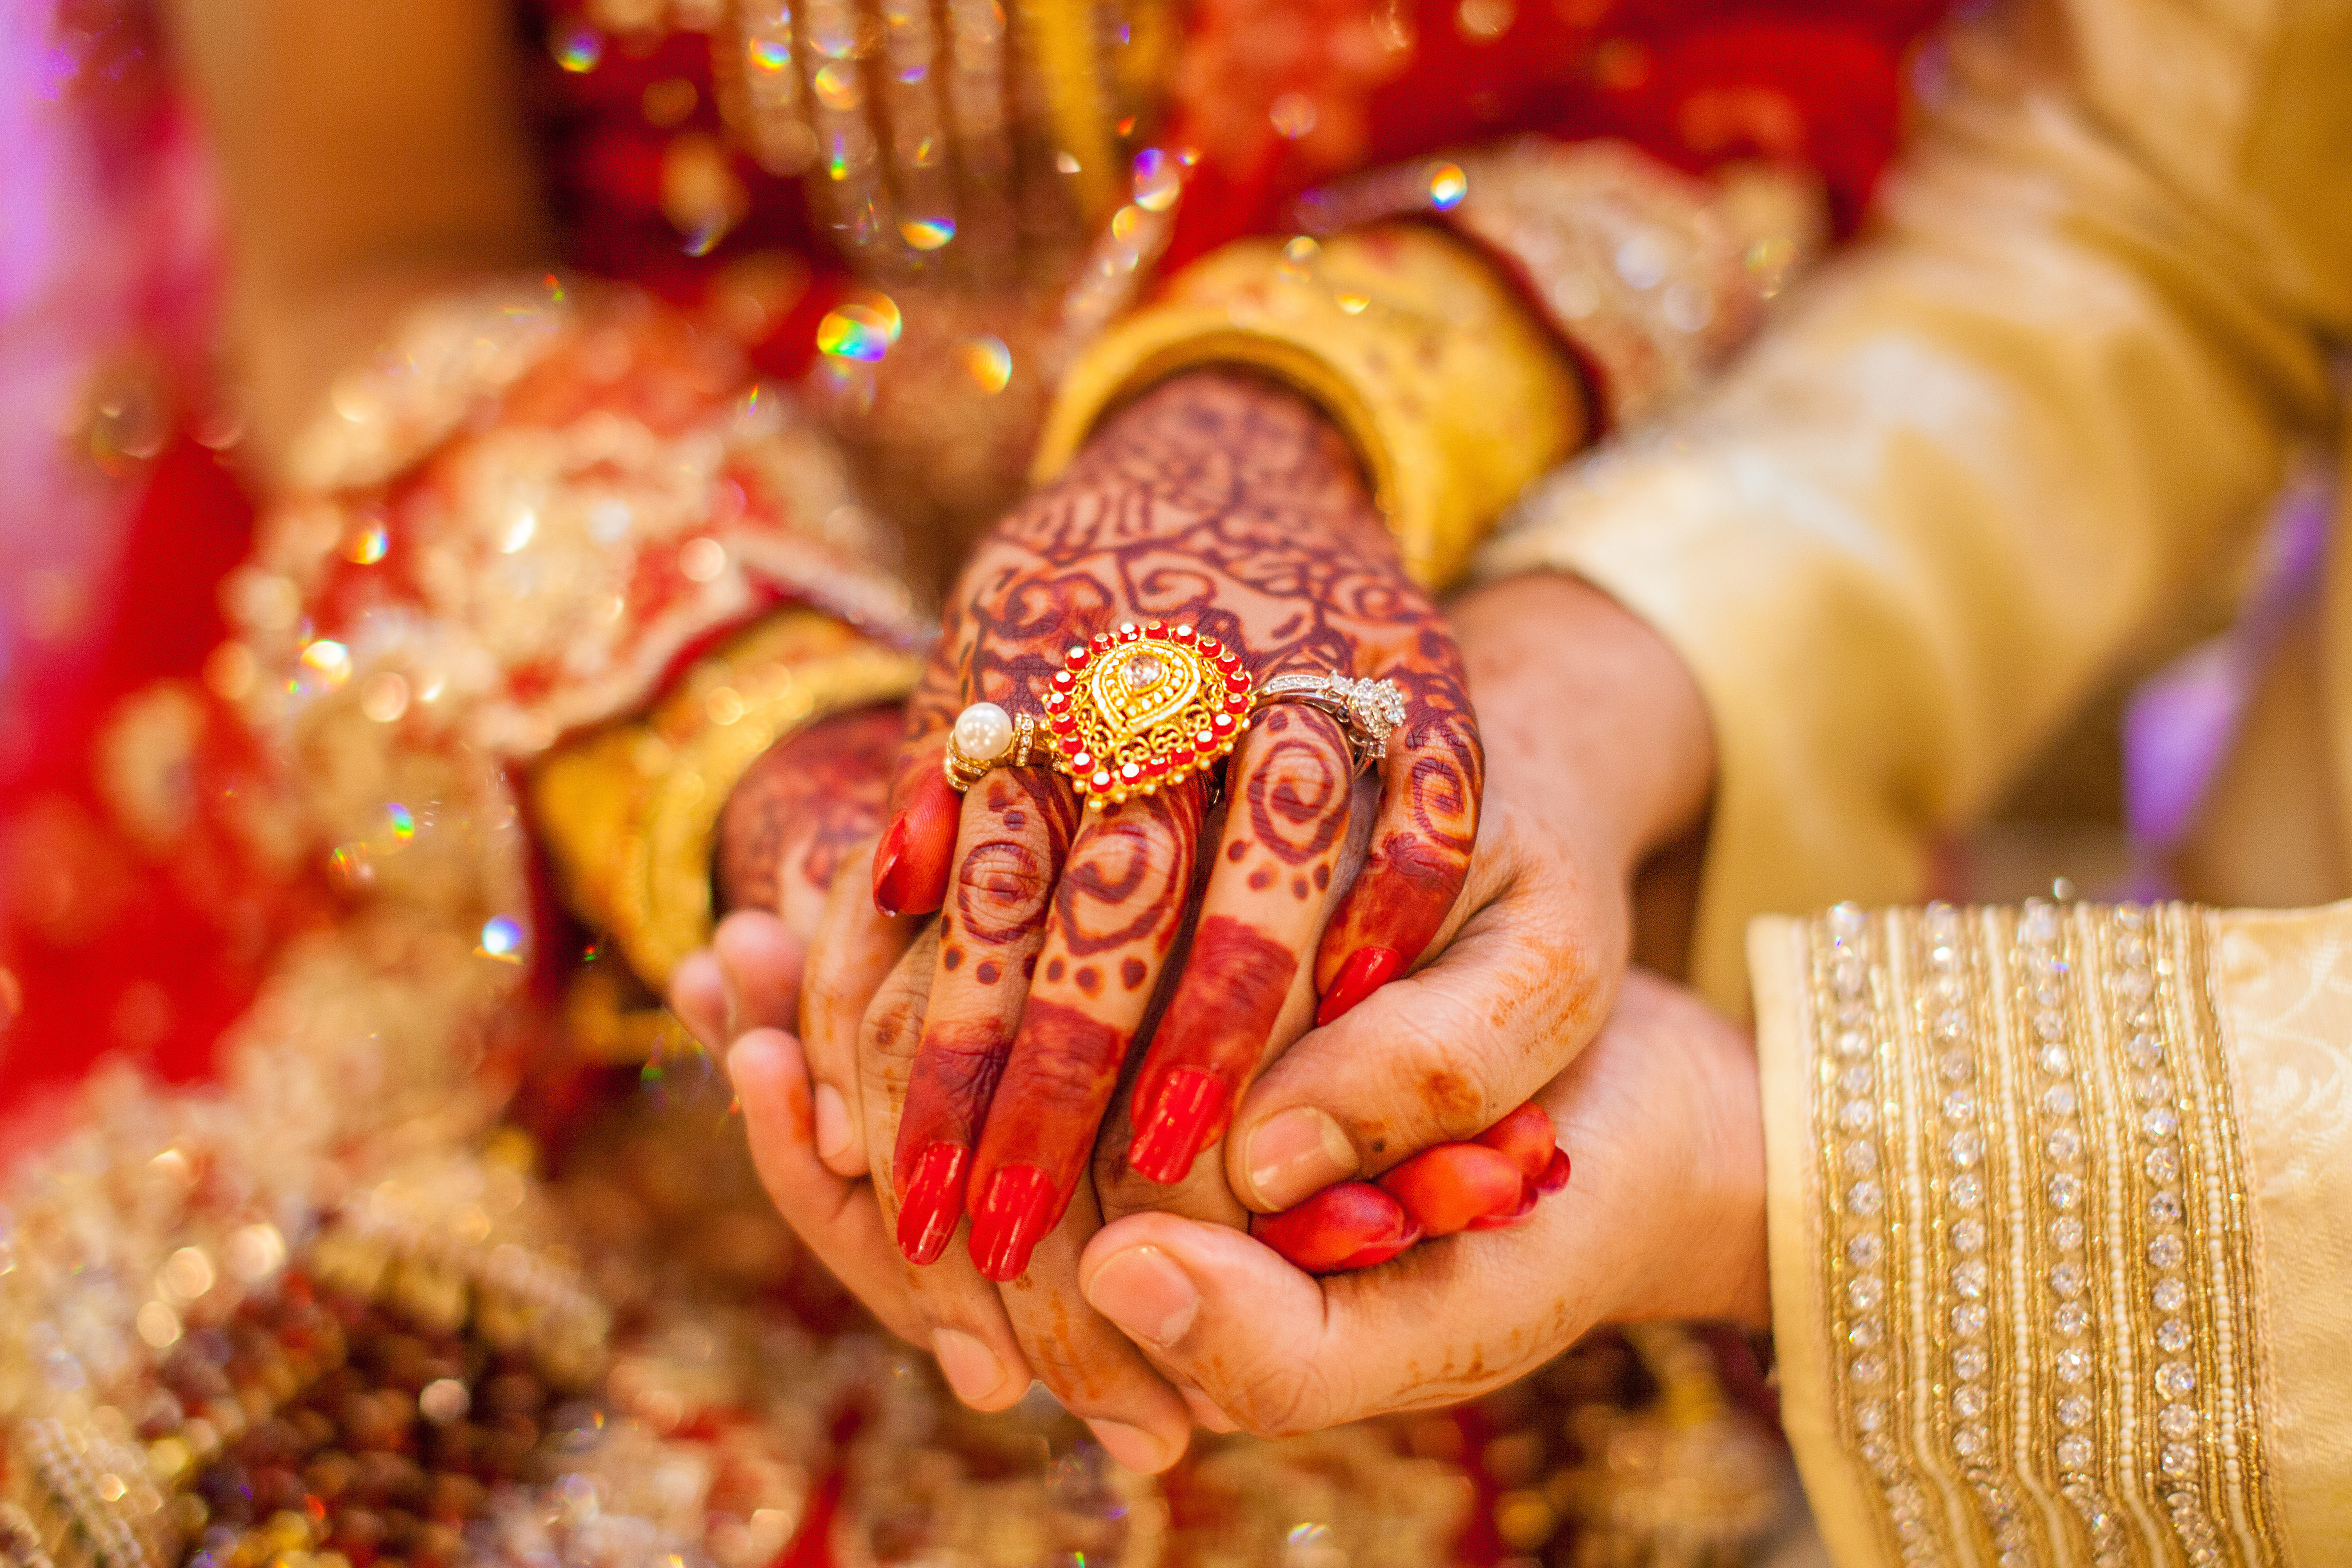 Les mains d'une femme avec des bagues en or et du henné | Source : Shutterstock